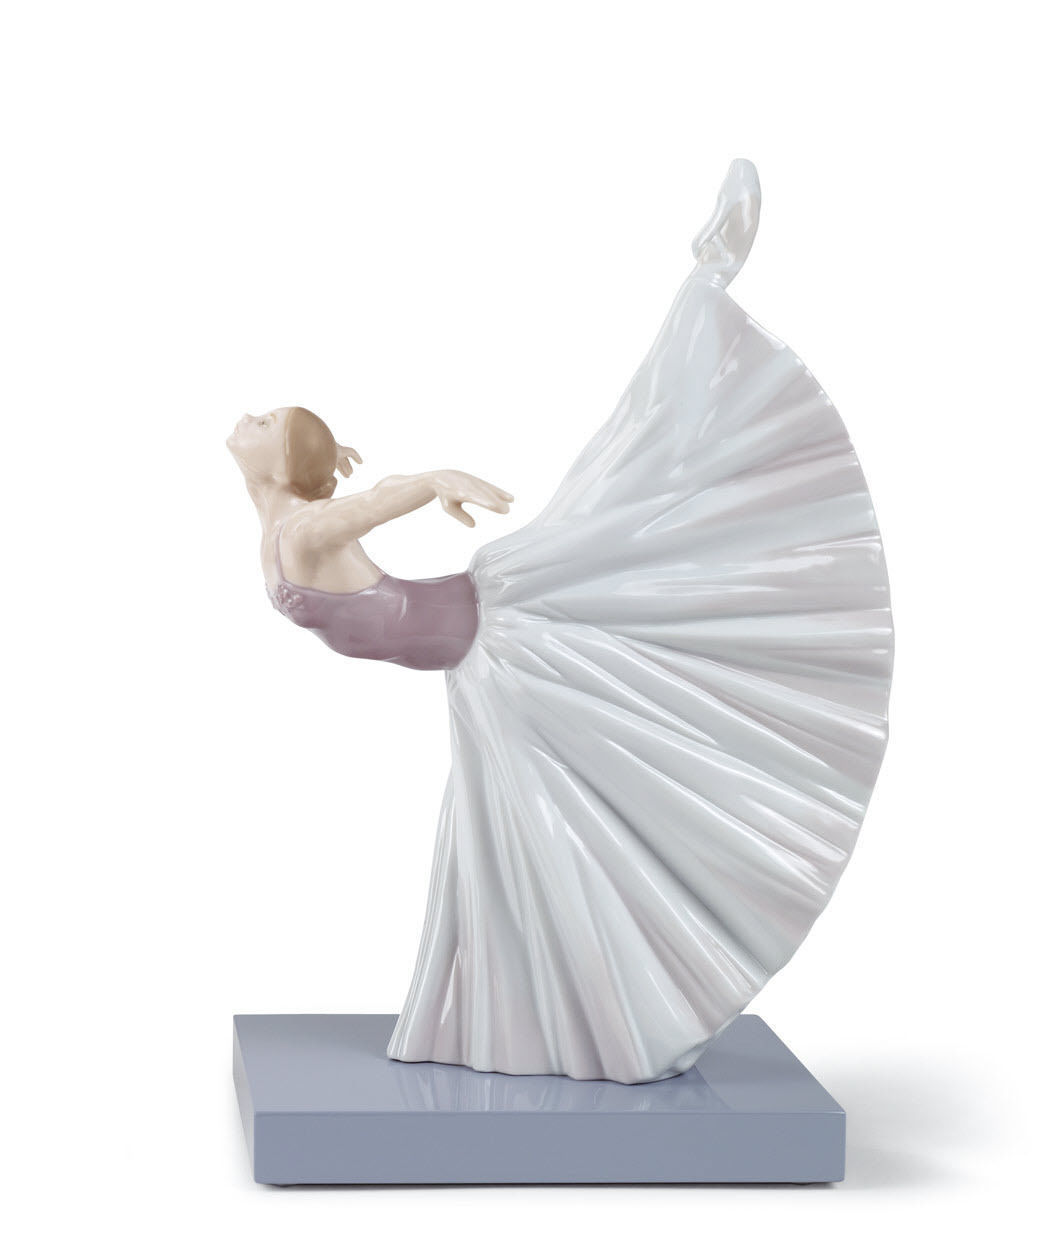 Lladro : 5 figurines exceptionnelles parmi les plus chères ! 